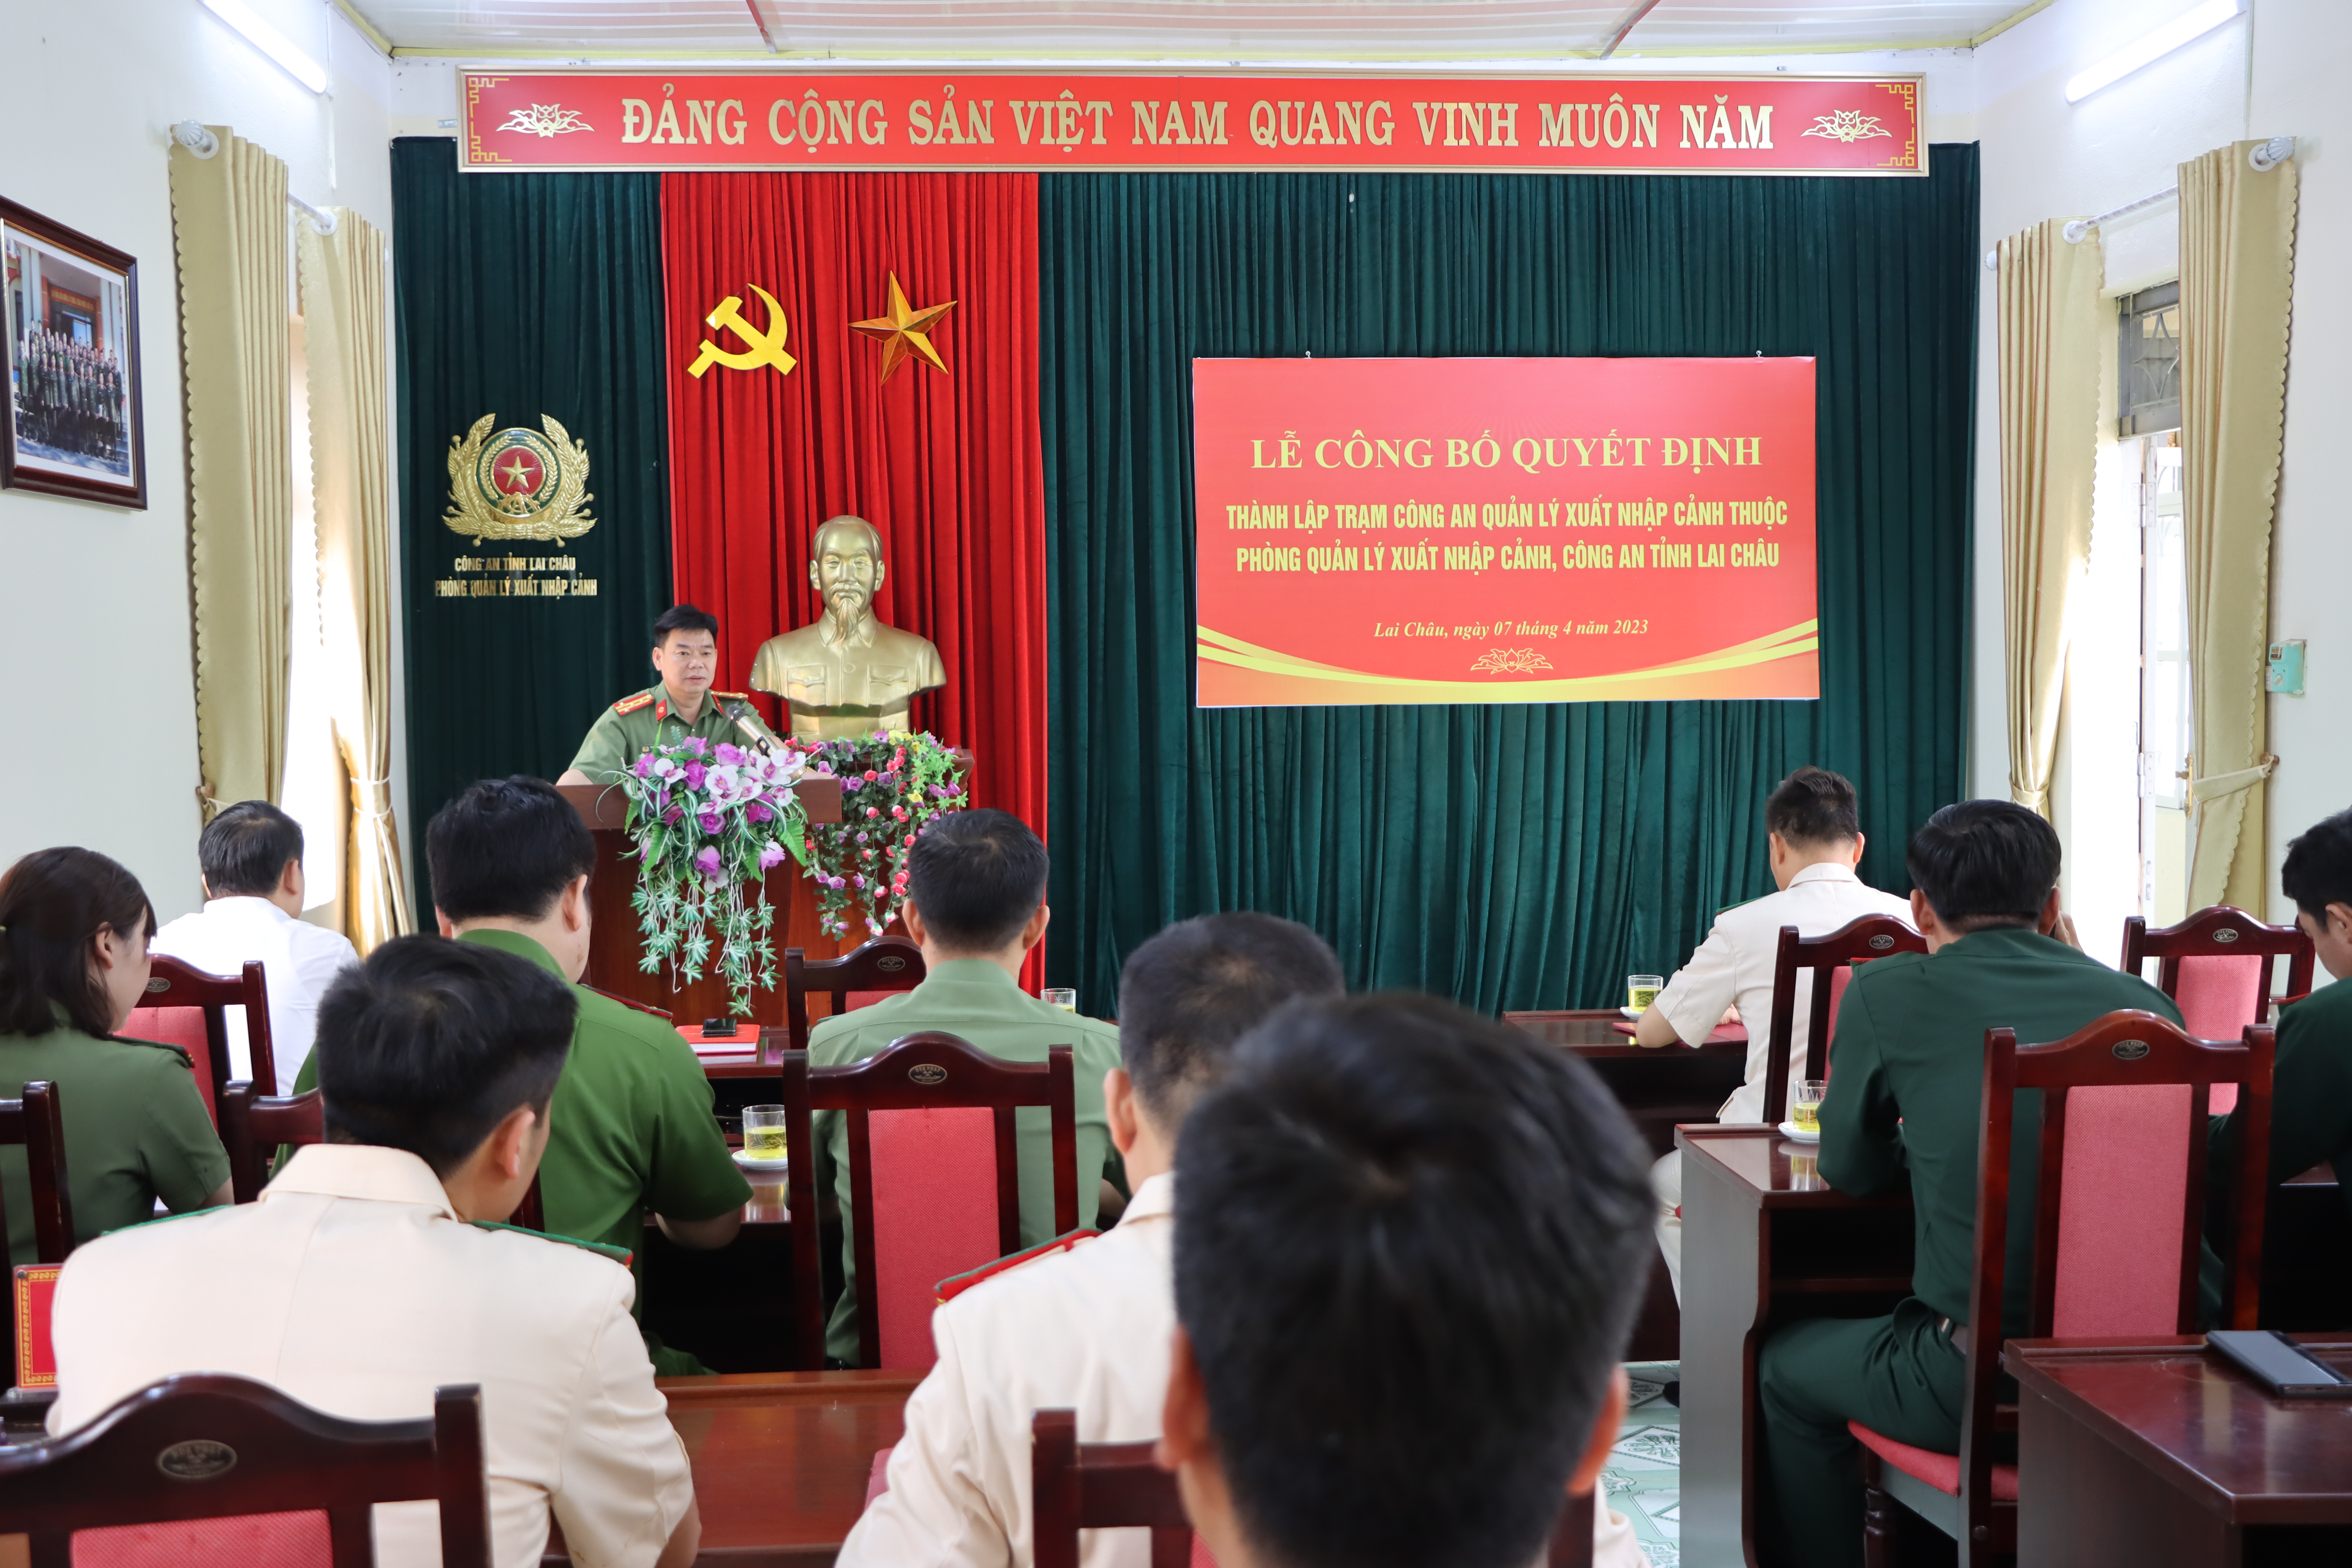 Đại tá Tao Văn Trường - Phó giám đốc Công an tỉnh phát biểu chỉ đạo tại buổi lễ